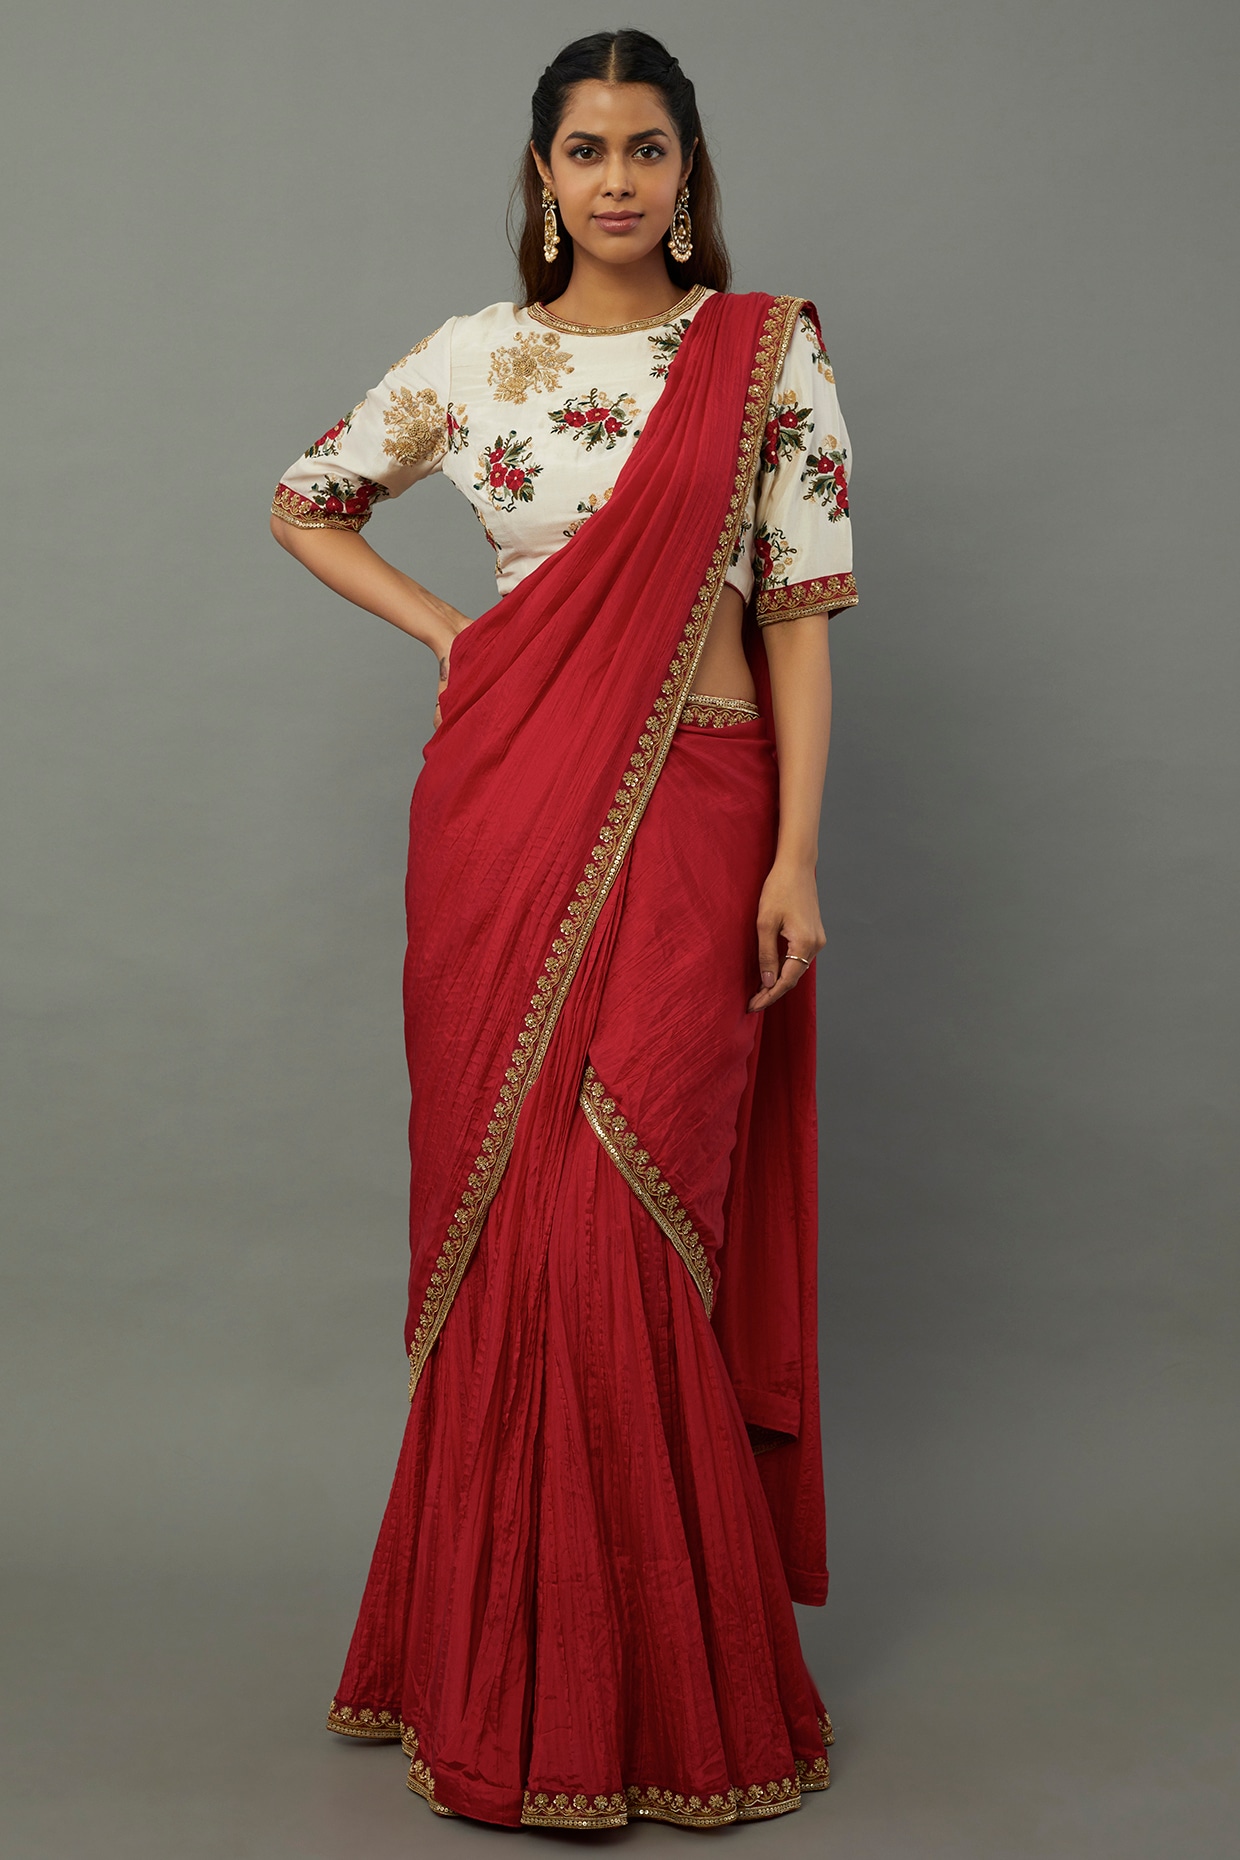 lehenga #saree #fashion #indianwedding #lehengacholi #indianwear  #ethnicwear #wedding #indianfashion #onlineshopping #kurti #indianbride… |  Instagram